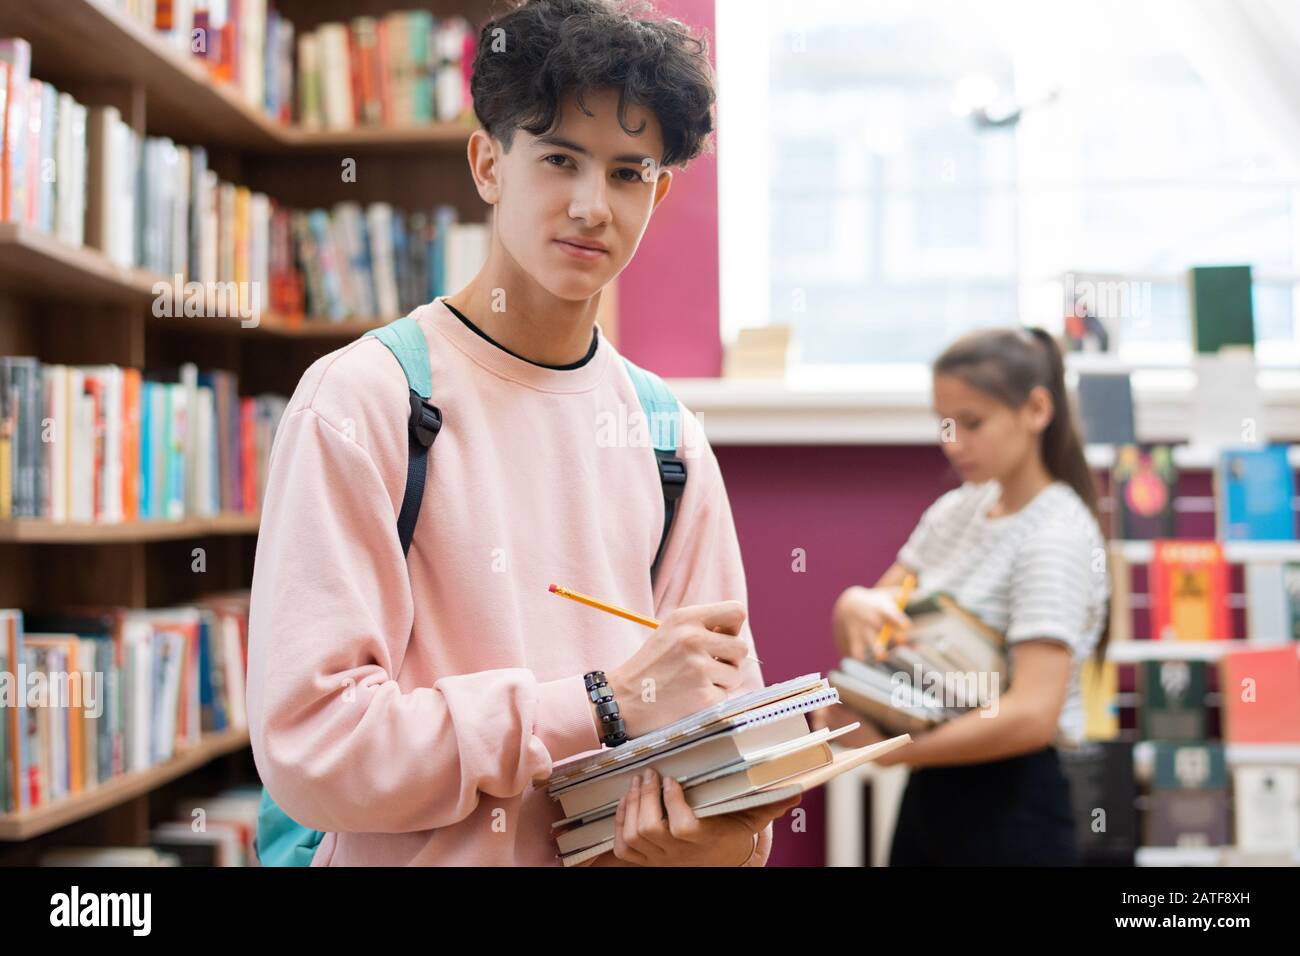 Un adolescent intelligent en sweat-shirt qui vous regarde tout en vous tenant à la bibliothèque Banque D'Images